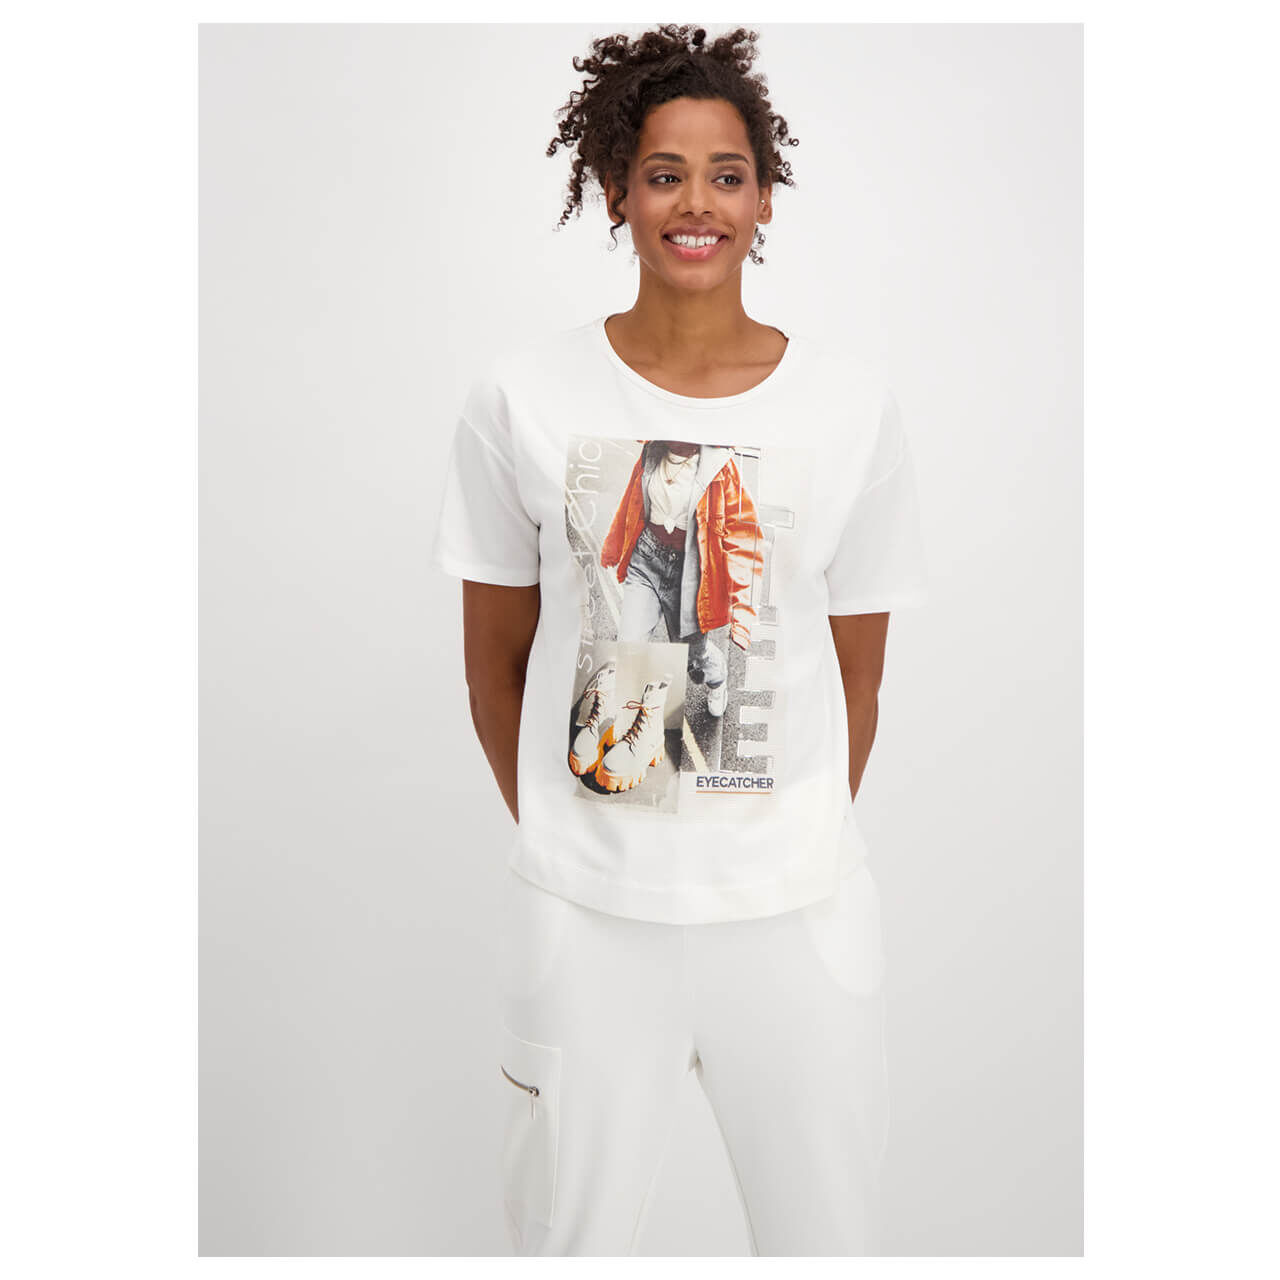 Monari T-Shirt für Damen in Cremeweiß mit Print, FarbNr.: 102